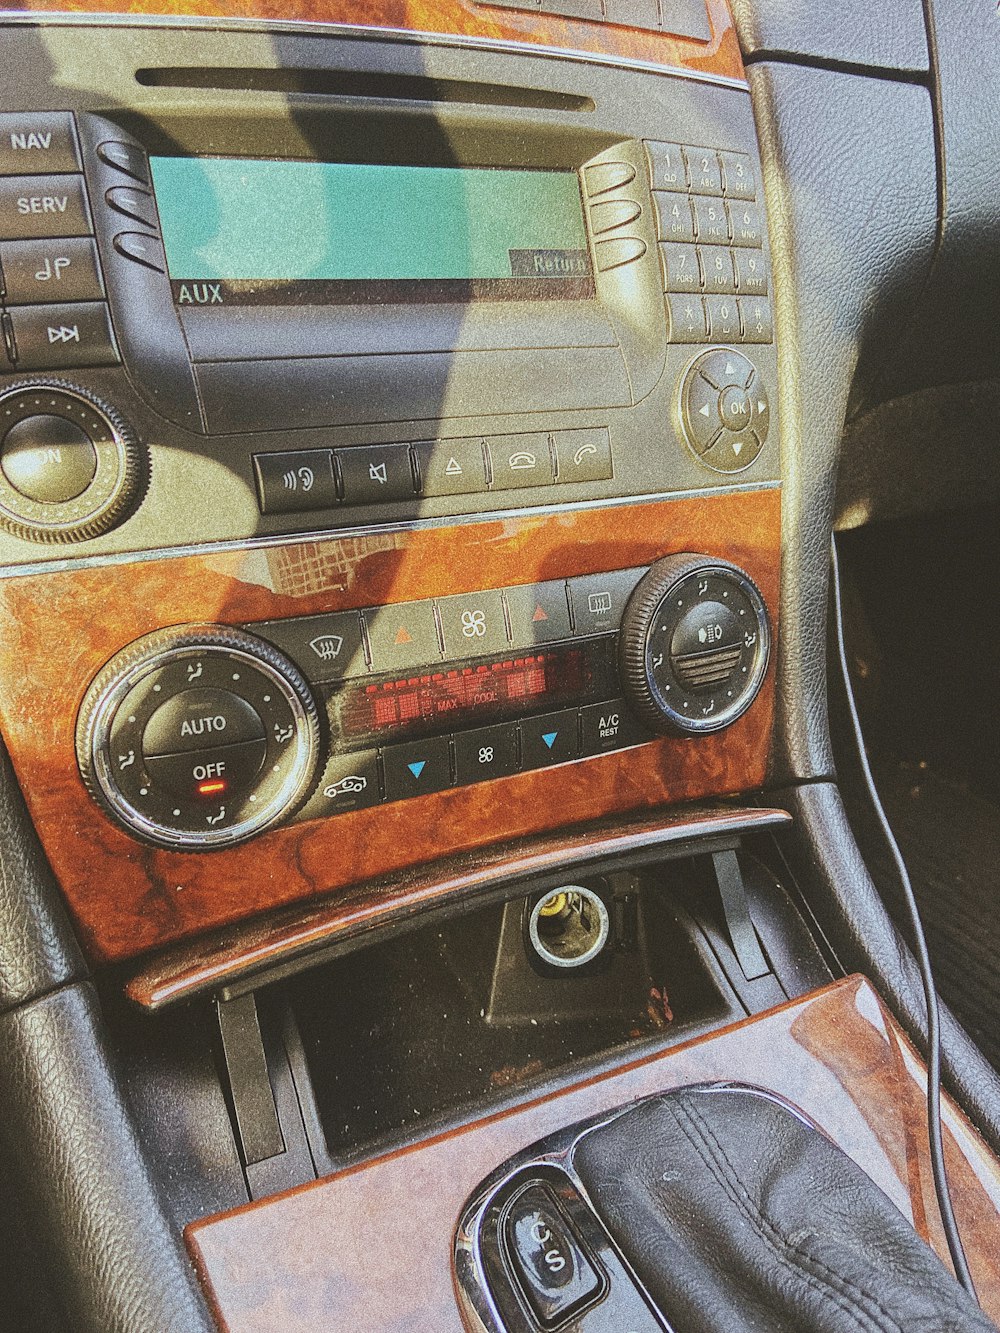 ラジオ付きの車のダッシュボードの写真